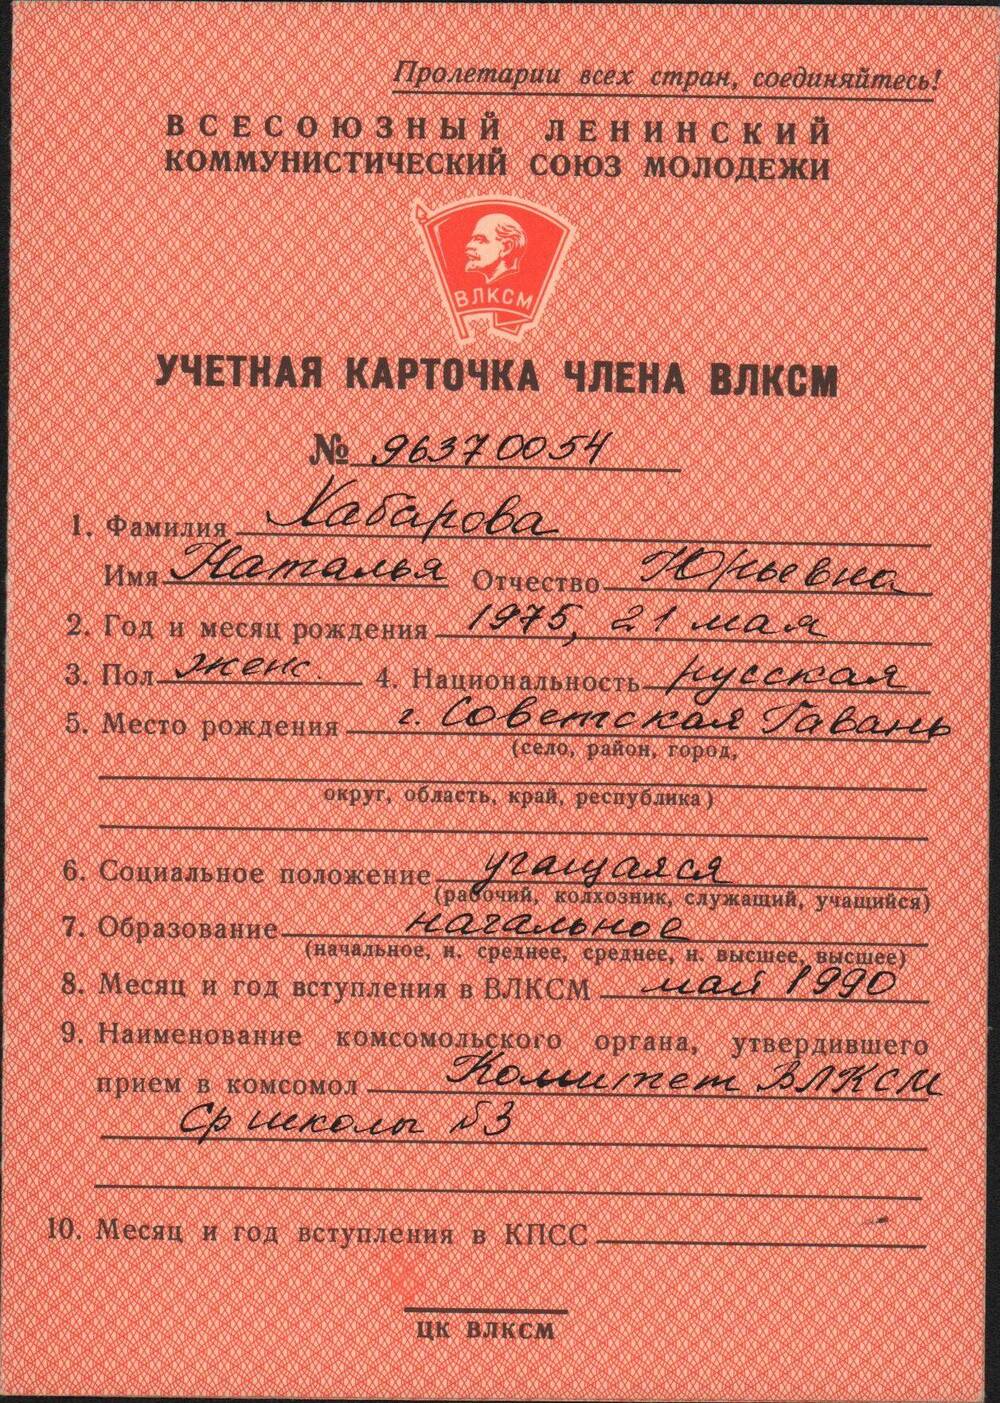 Учетная карточка члена ВЛКСМ № 96370054 Хабаровой Натальи Юрьевны, учащейся средней школы № 3.